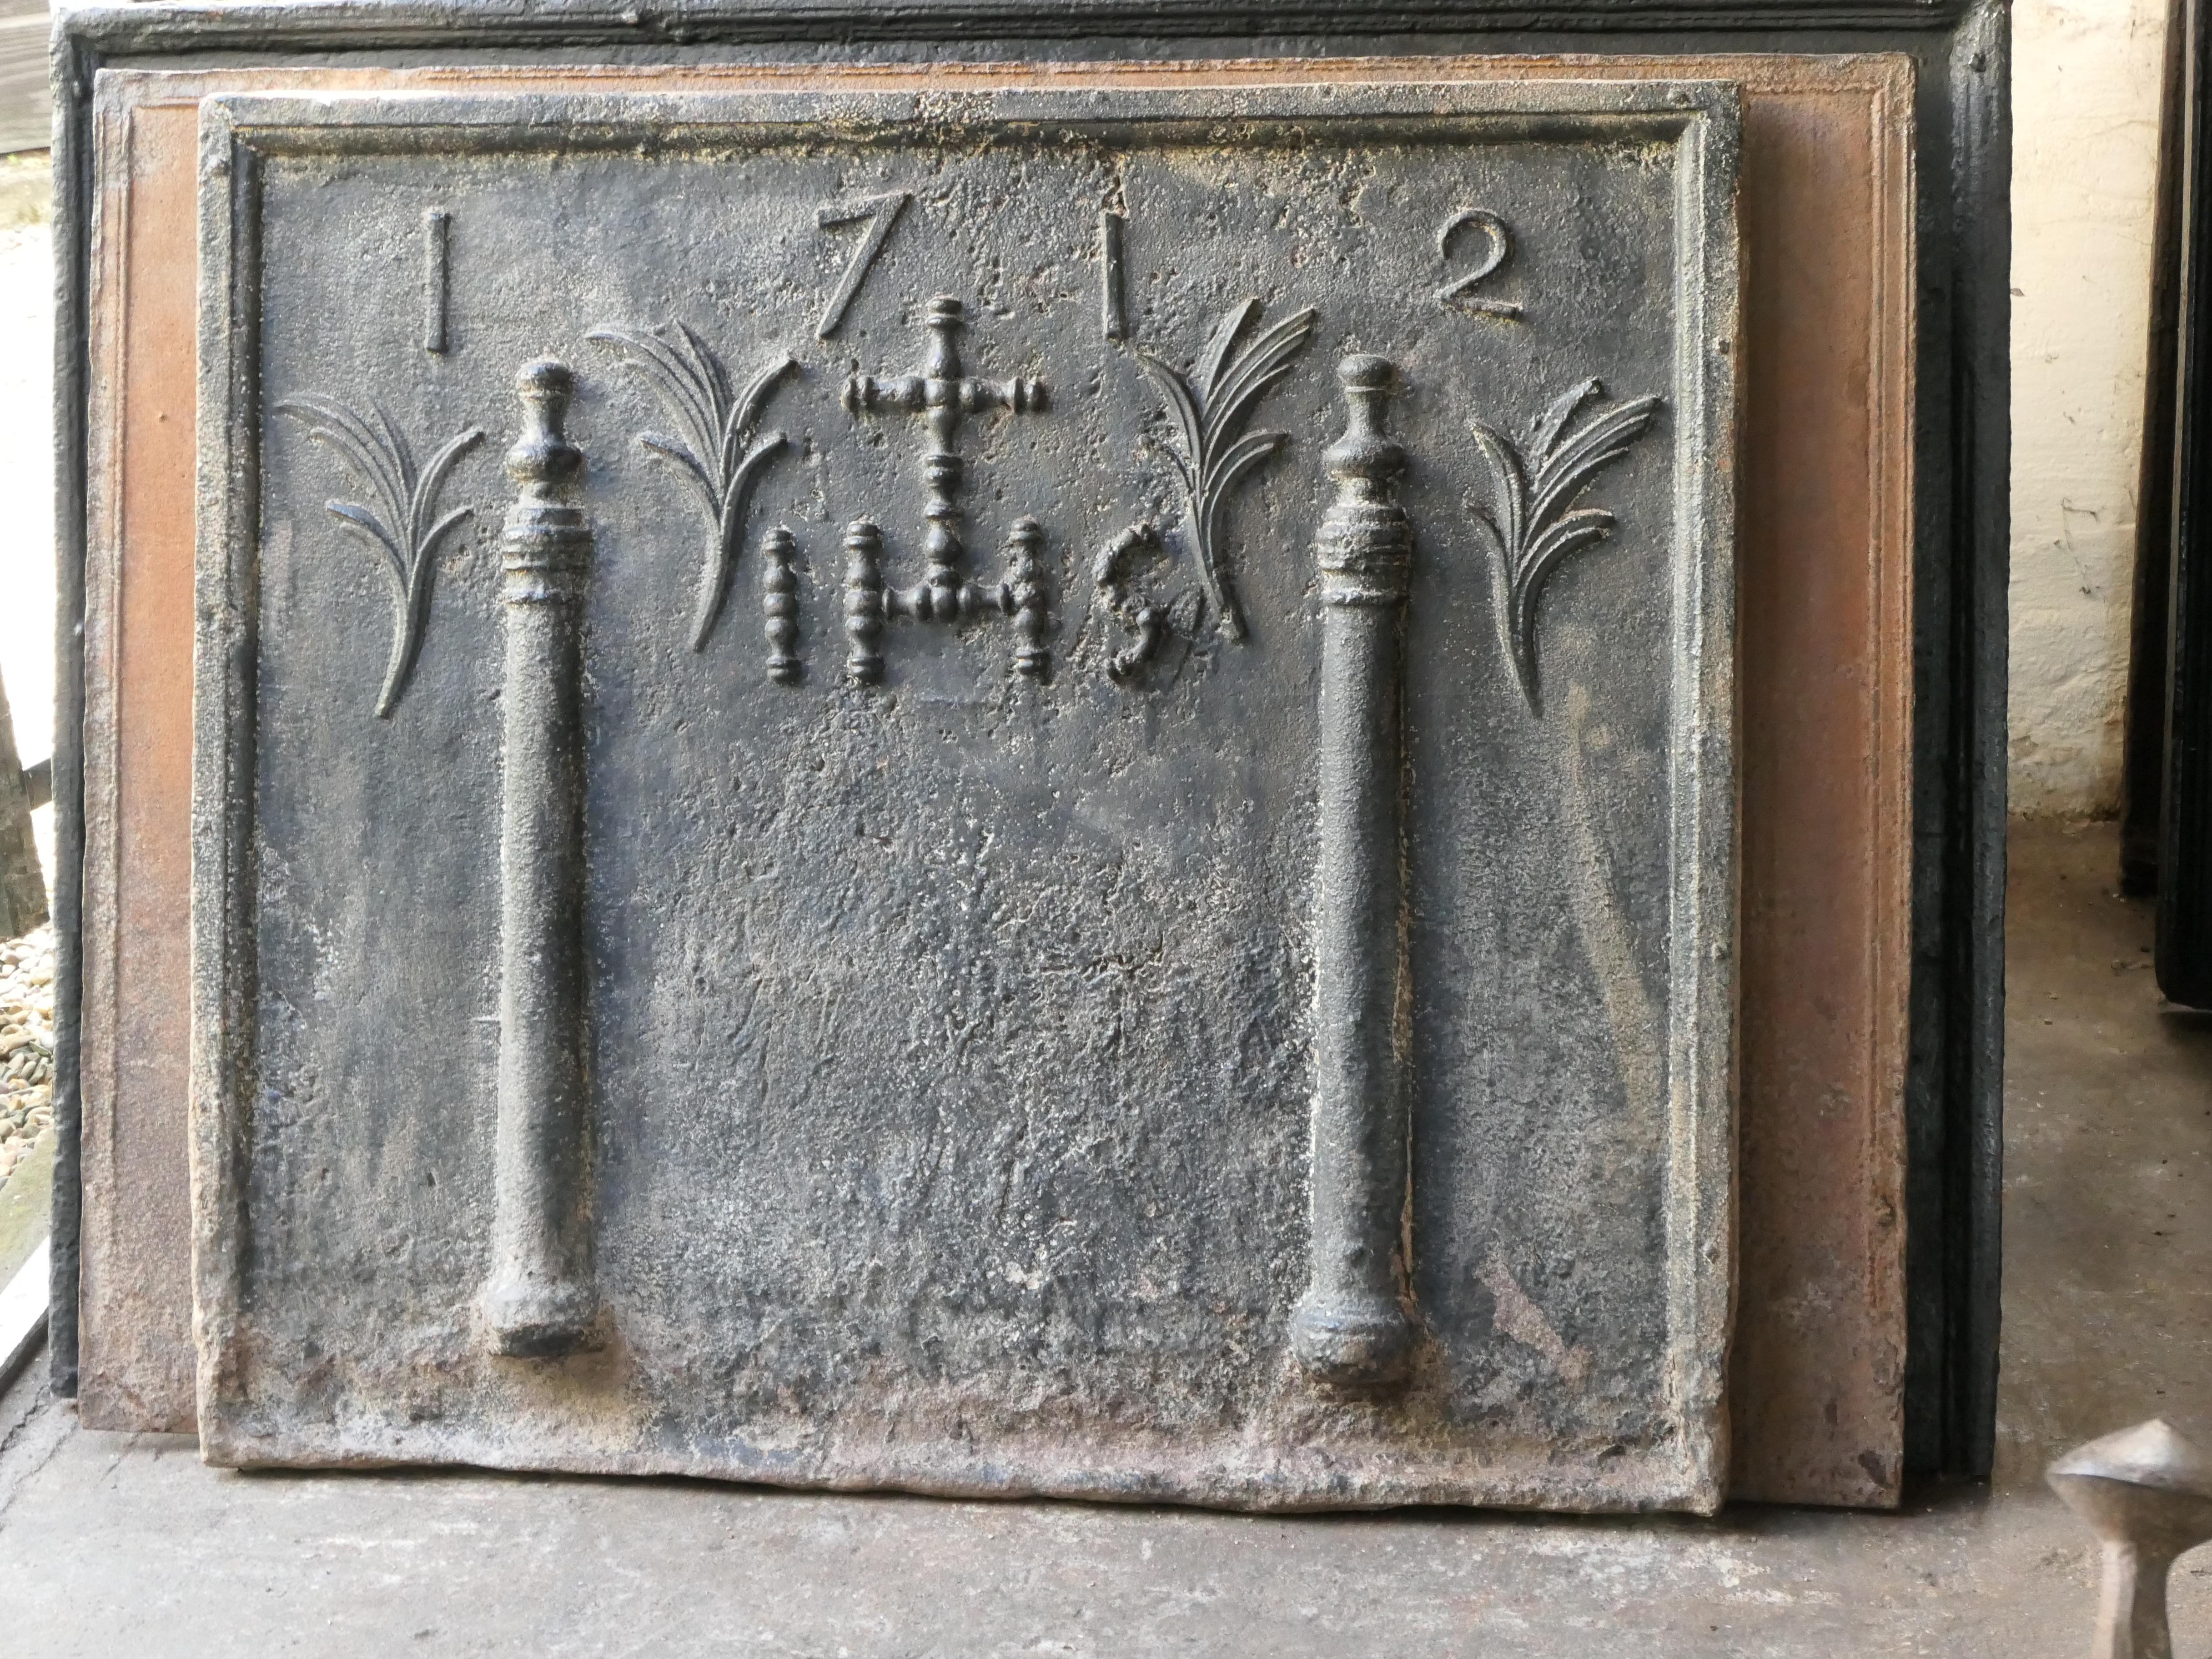 Französischer Louis XIV-Feuerboden aus dem 18. Jahrhundert mit zwei Säulen, einem IHS-Monogramm und dem Herstellungsdatum 1712.

Das Monogramm IHS steht für Iesus Hominum Salvator (Jesus der Retter der Menschheit) oder In Hoc Signo (In diesem